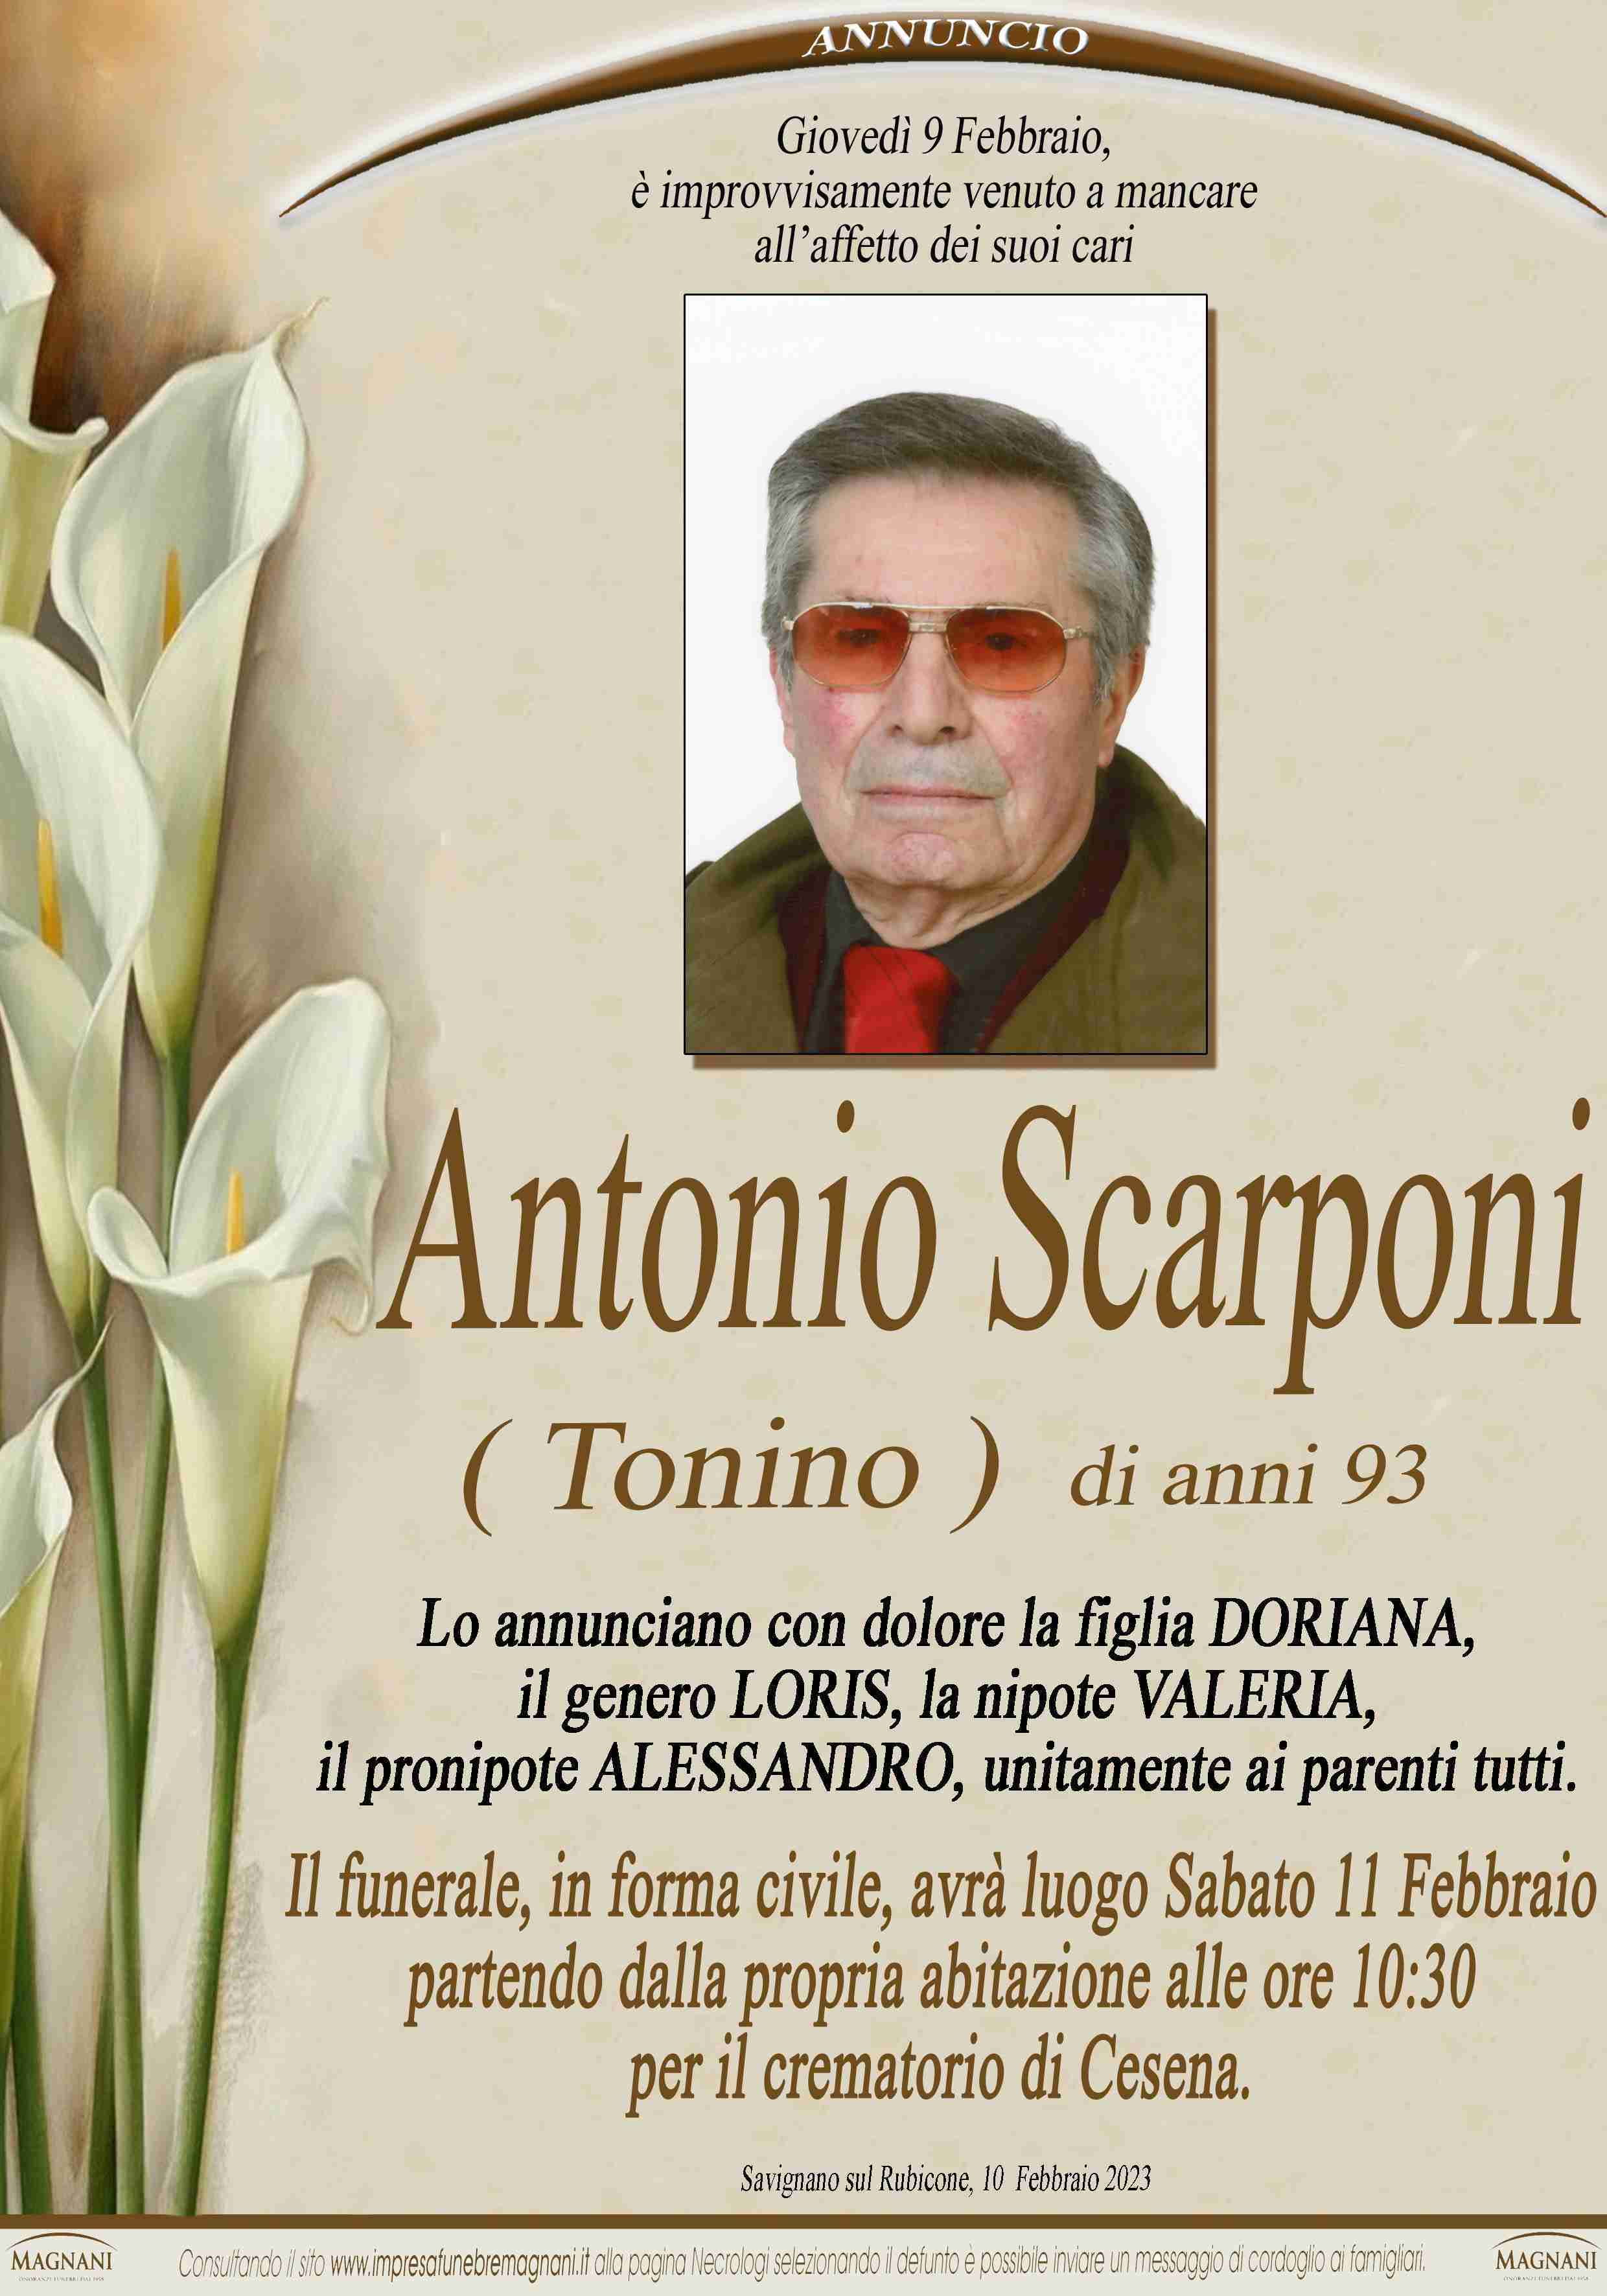 Antonio Scarponi